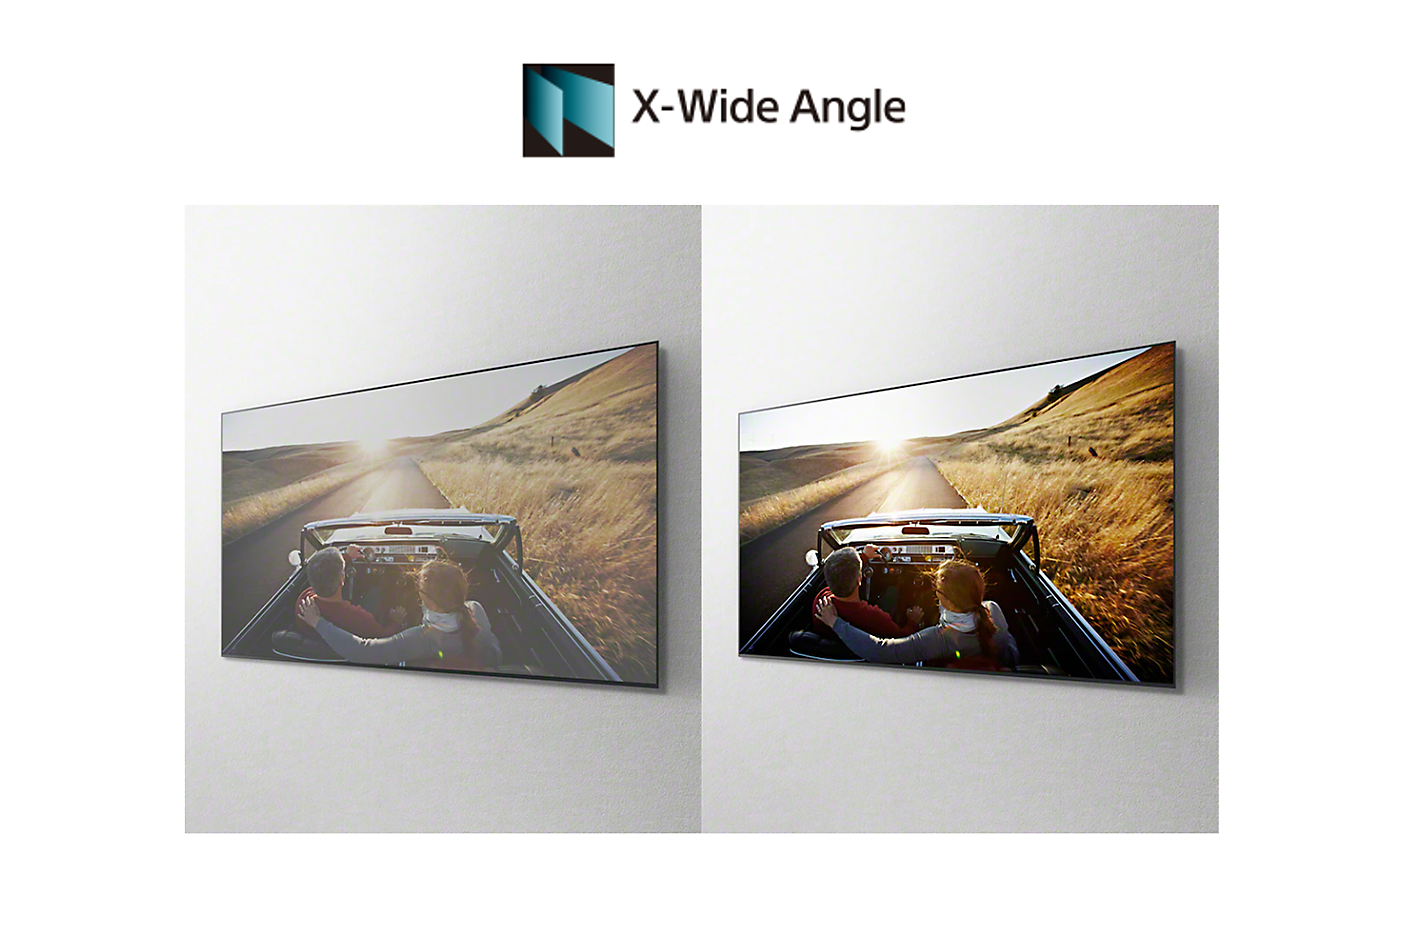 Slika avtomobila na dveh zaslonih prikazuje pristne barve z vseh strani s tehnologijo X-Wide Angle™